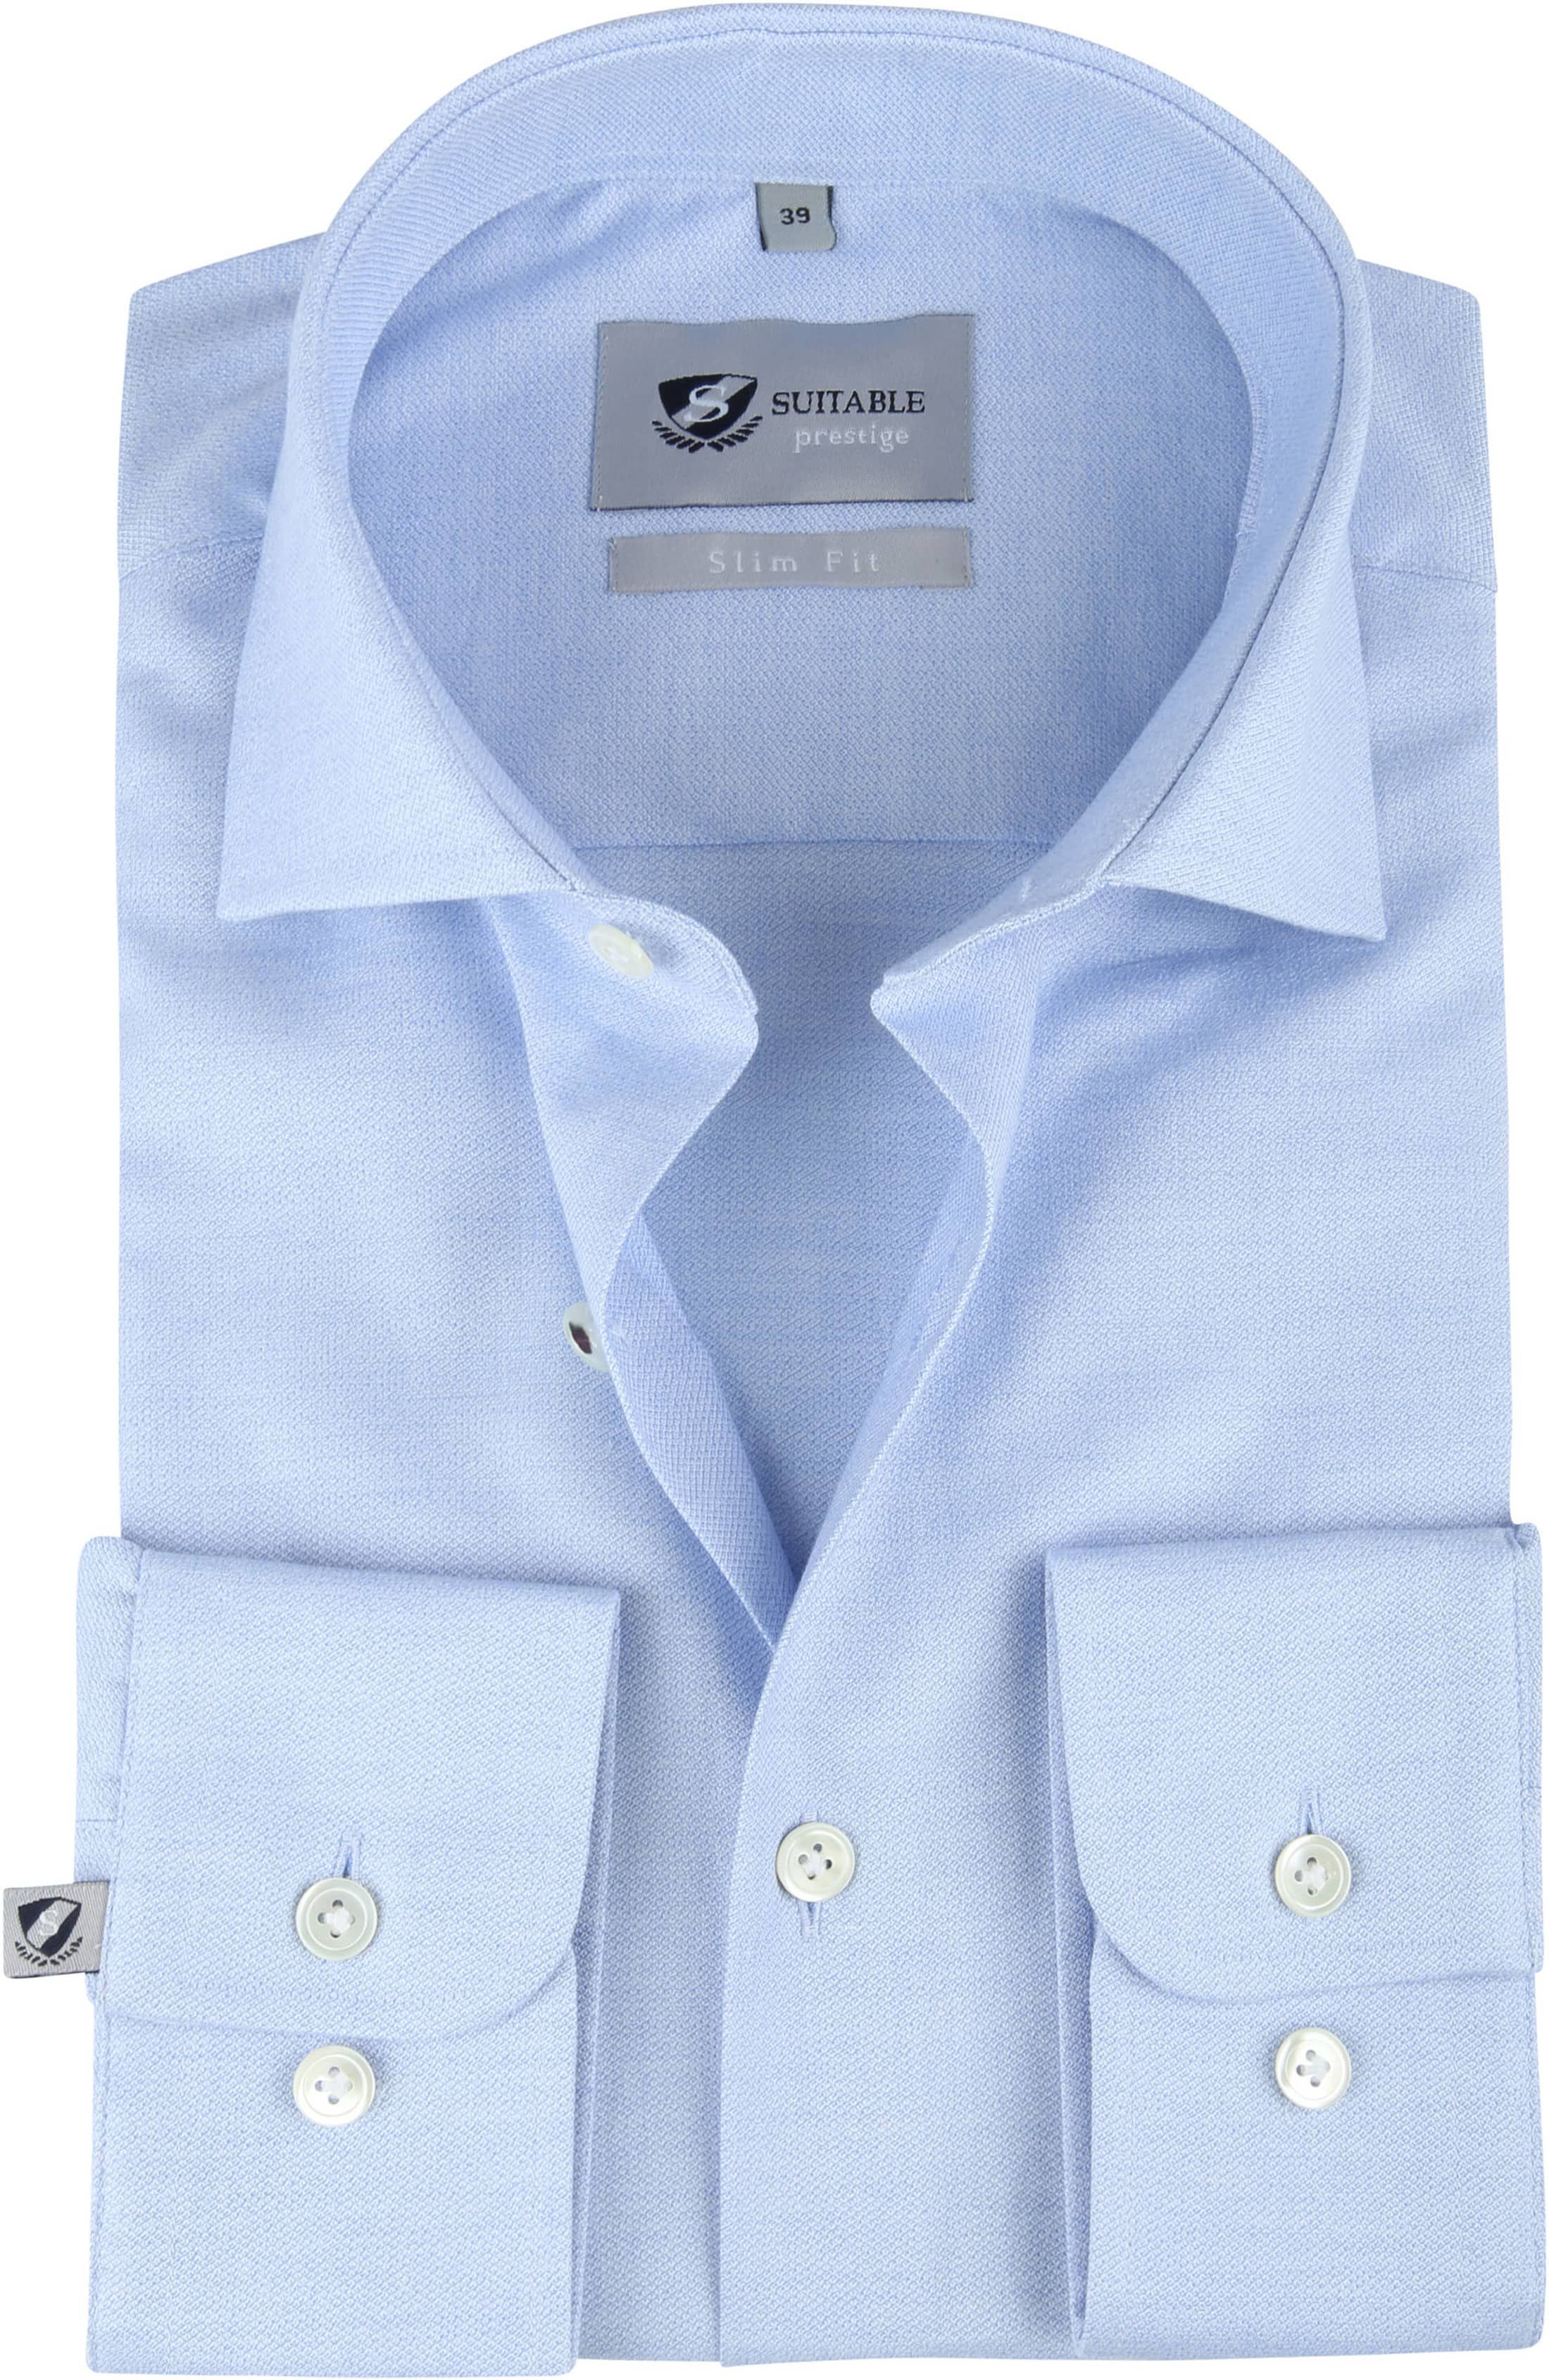 Suitable Prestige Shirt Mouline Light Blue size 15 1/2